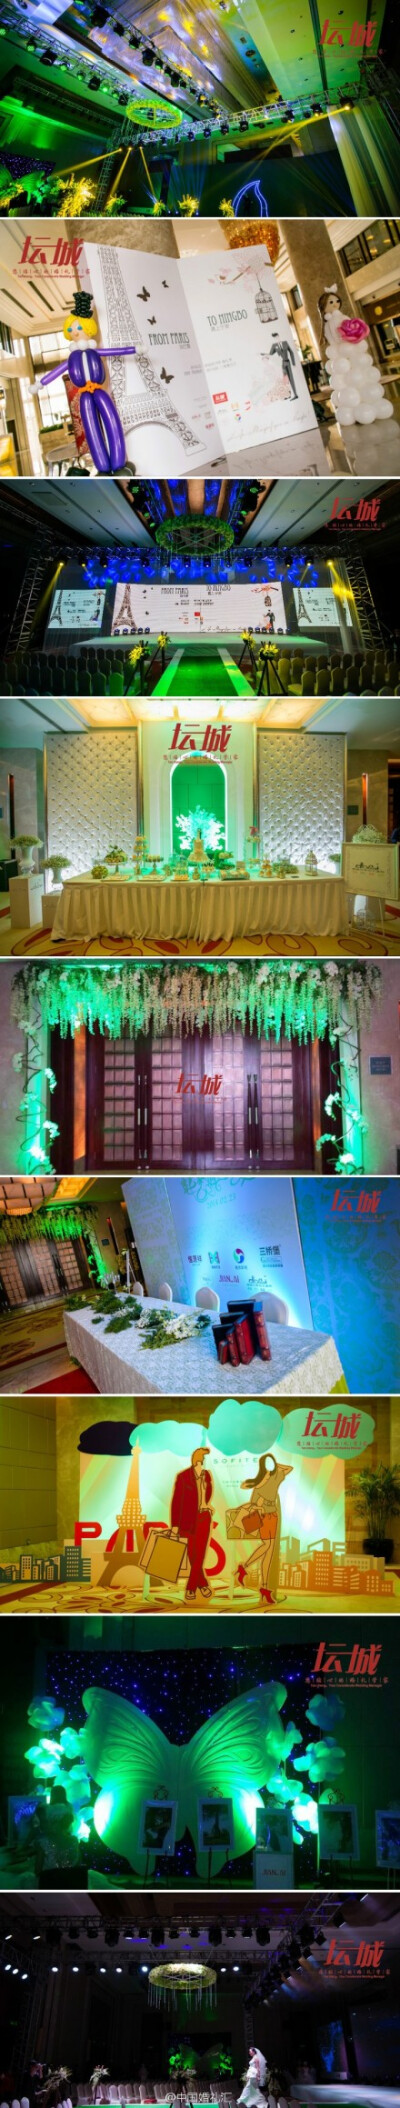 蝶--震撼的灯光秀、旋转的LED屏，以及华丽的场地布置，给人带来别具一格的情感和视觉盛宴。这场婚礼很赞~ http://t.cn/8Fr1HMk (共11张图片) 收集于@宁波传承文化传播有限公司